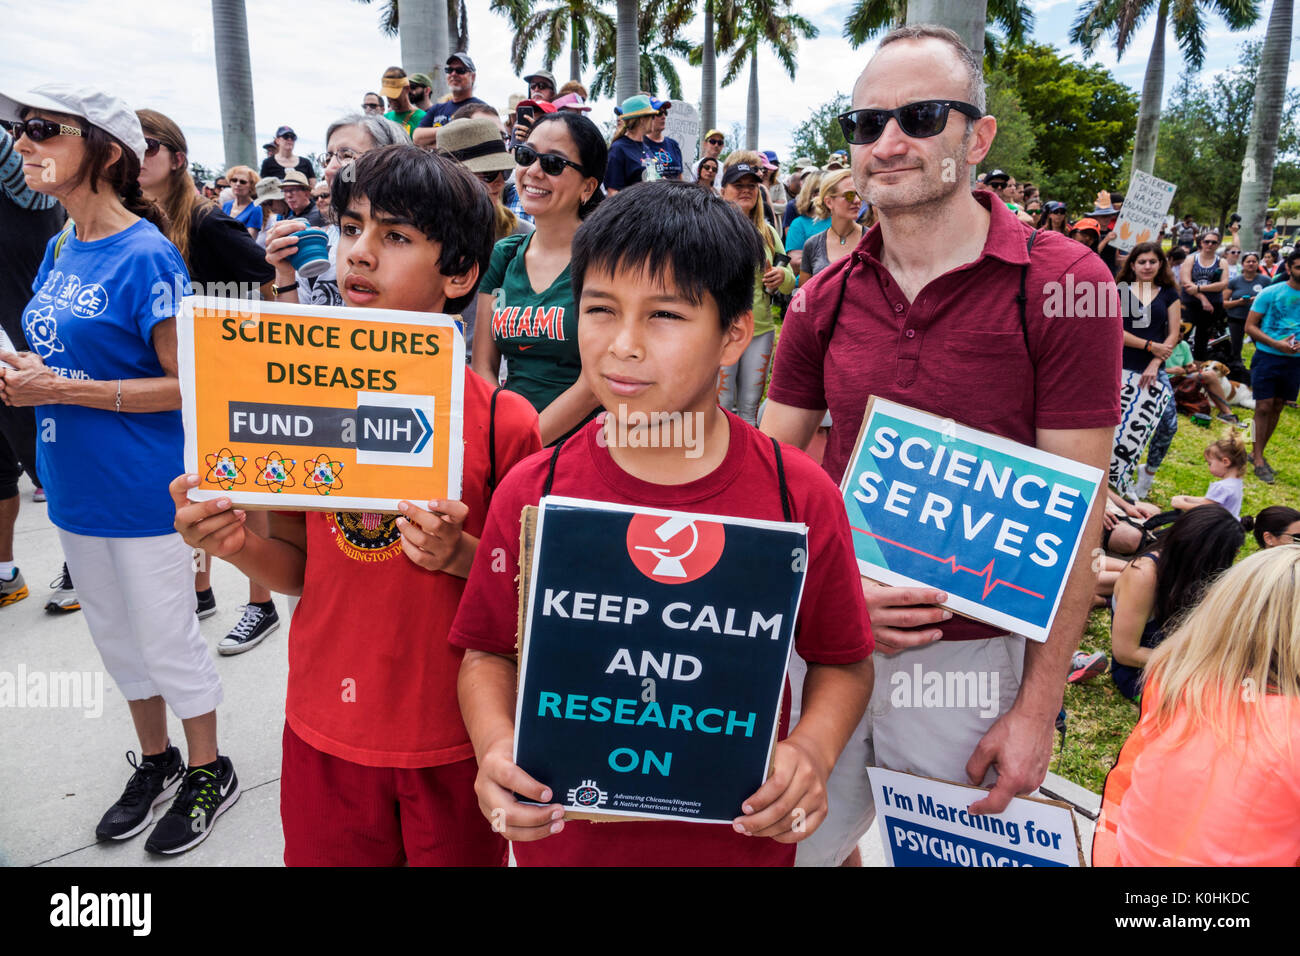 Miami Florida,Museum Park,March for Science,protesta,rally,segno,poster,manifestante,ragazzi,ragazzi ragazzi ragazzi ragazzi ragazzi bambini bambini bambini ragazzi, latini ispanici asiatici Foto Stock